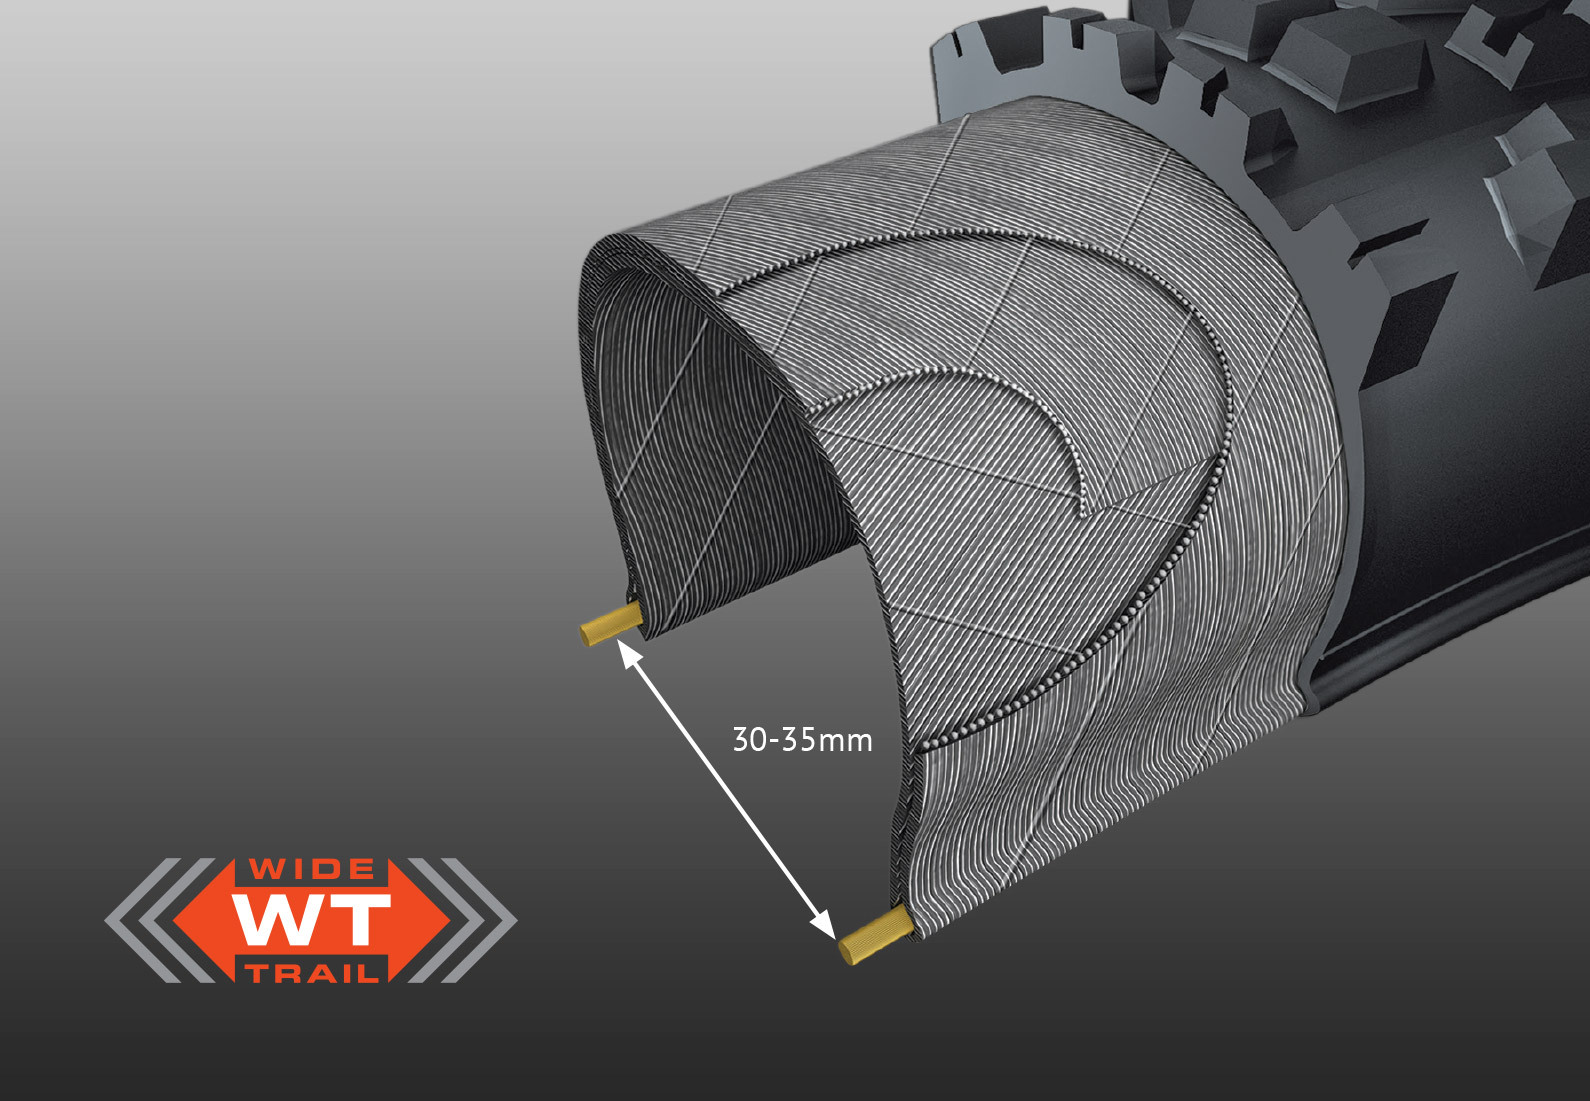 WIDE TRAIL (WT) CONSTRUCTION -&nbsp;optimalizuje rozložení a profil běhounu pneumatiky na moderních, širších ráfcích.&nbsp;Tradiční pneumatiky jsou navrženy kolem starších, užších ráfků a mohou vytvořit příliš čtvercový profil pneumatiky, což vede k méně než optimálnímu výkonu.&nbsp;Pneumatiky WT jsou optimalizovány pro vnitřní šířku ráfku 30-35mm.
